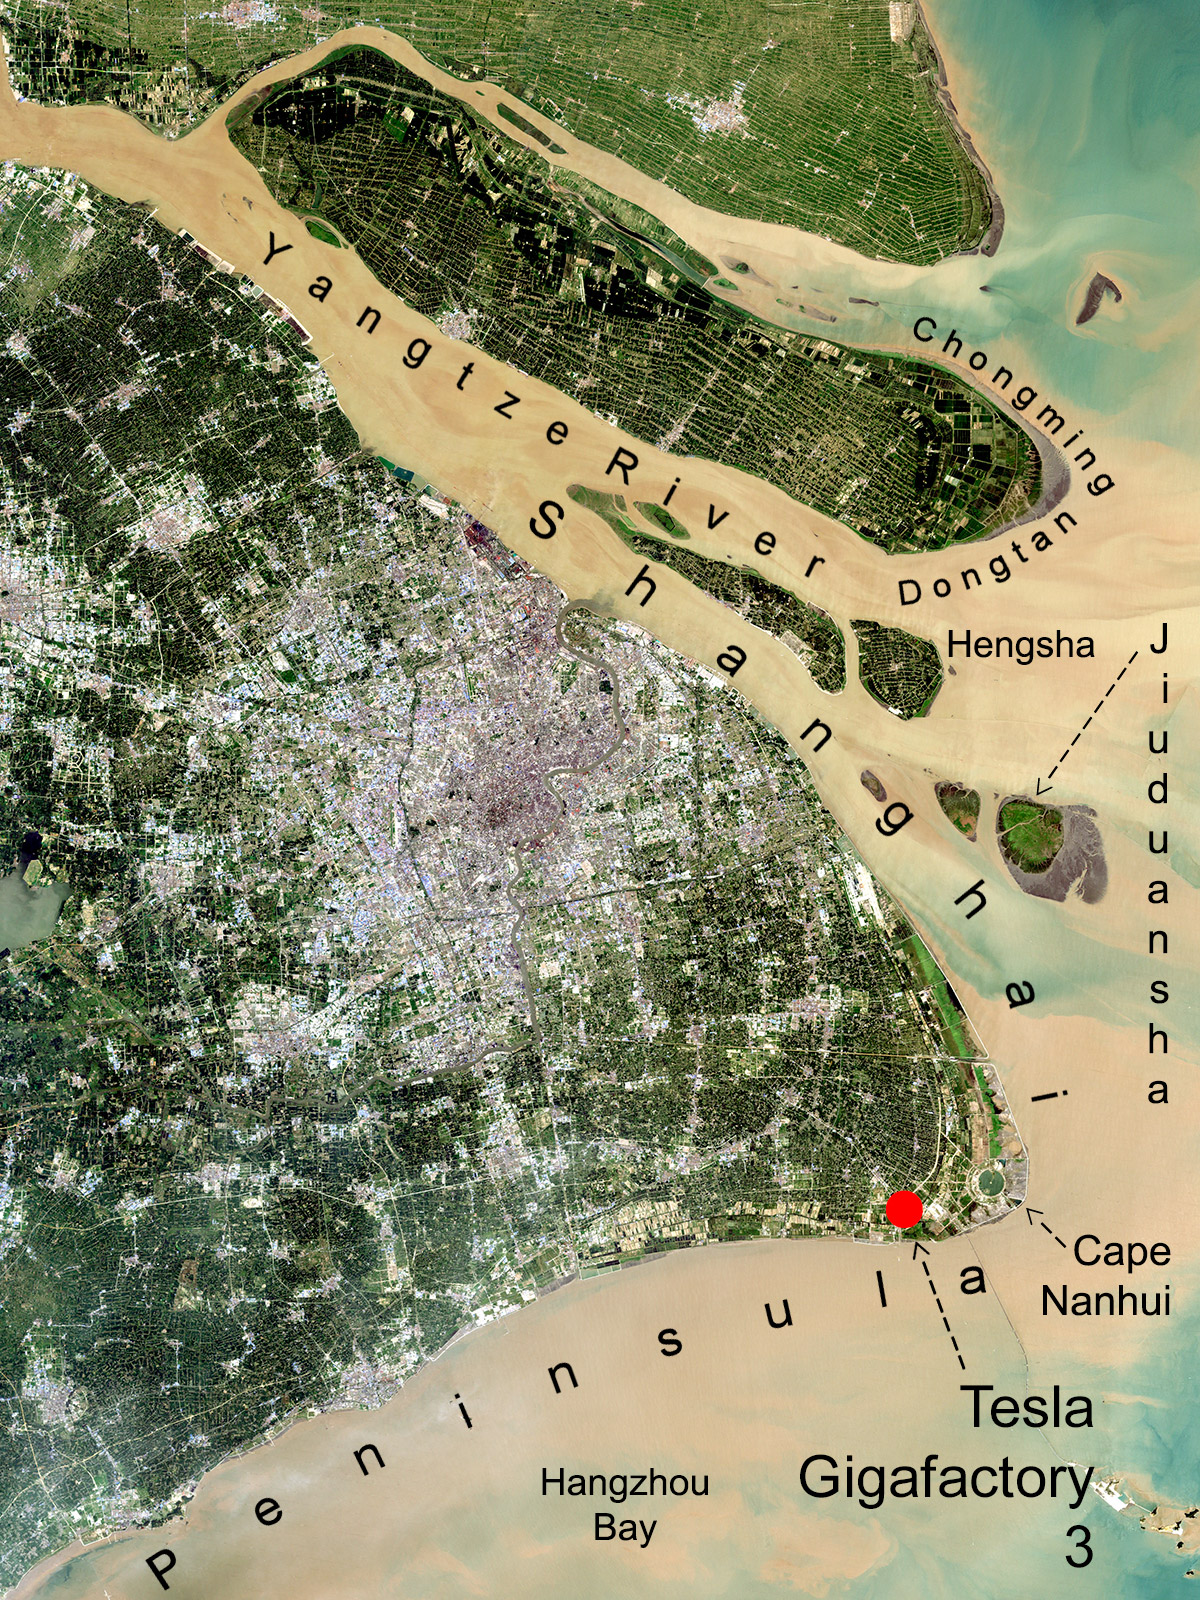 Shanghai by satellite (NASA/Craig Brelsford)